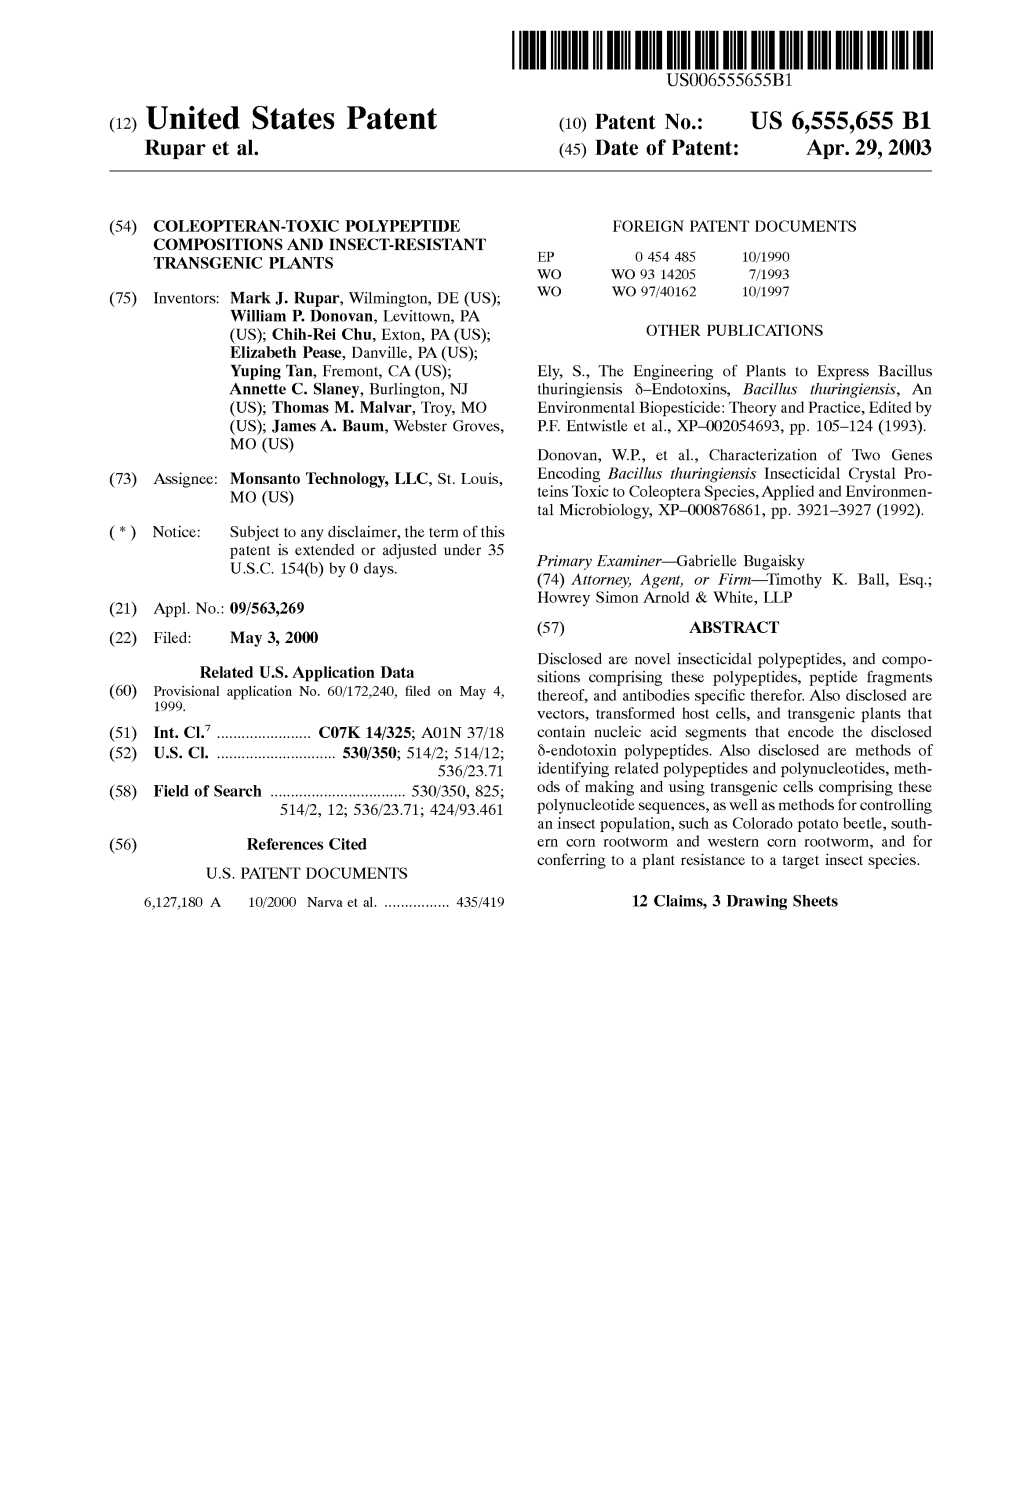 (12) United States Patent (10) Patent No.: US 6,555,655 B1 Rupar Et Al